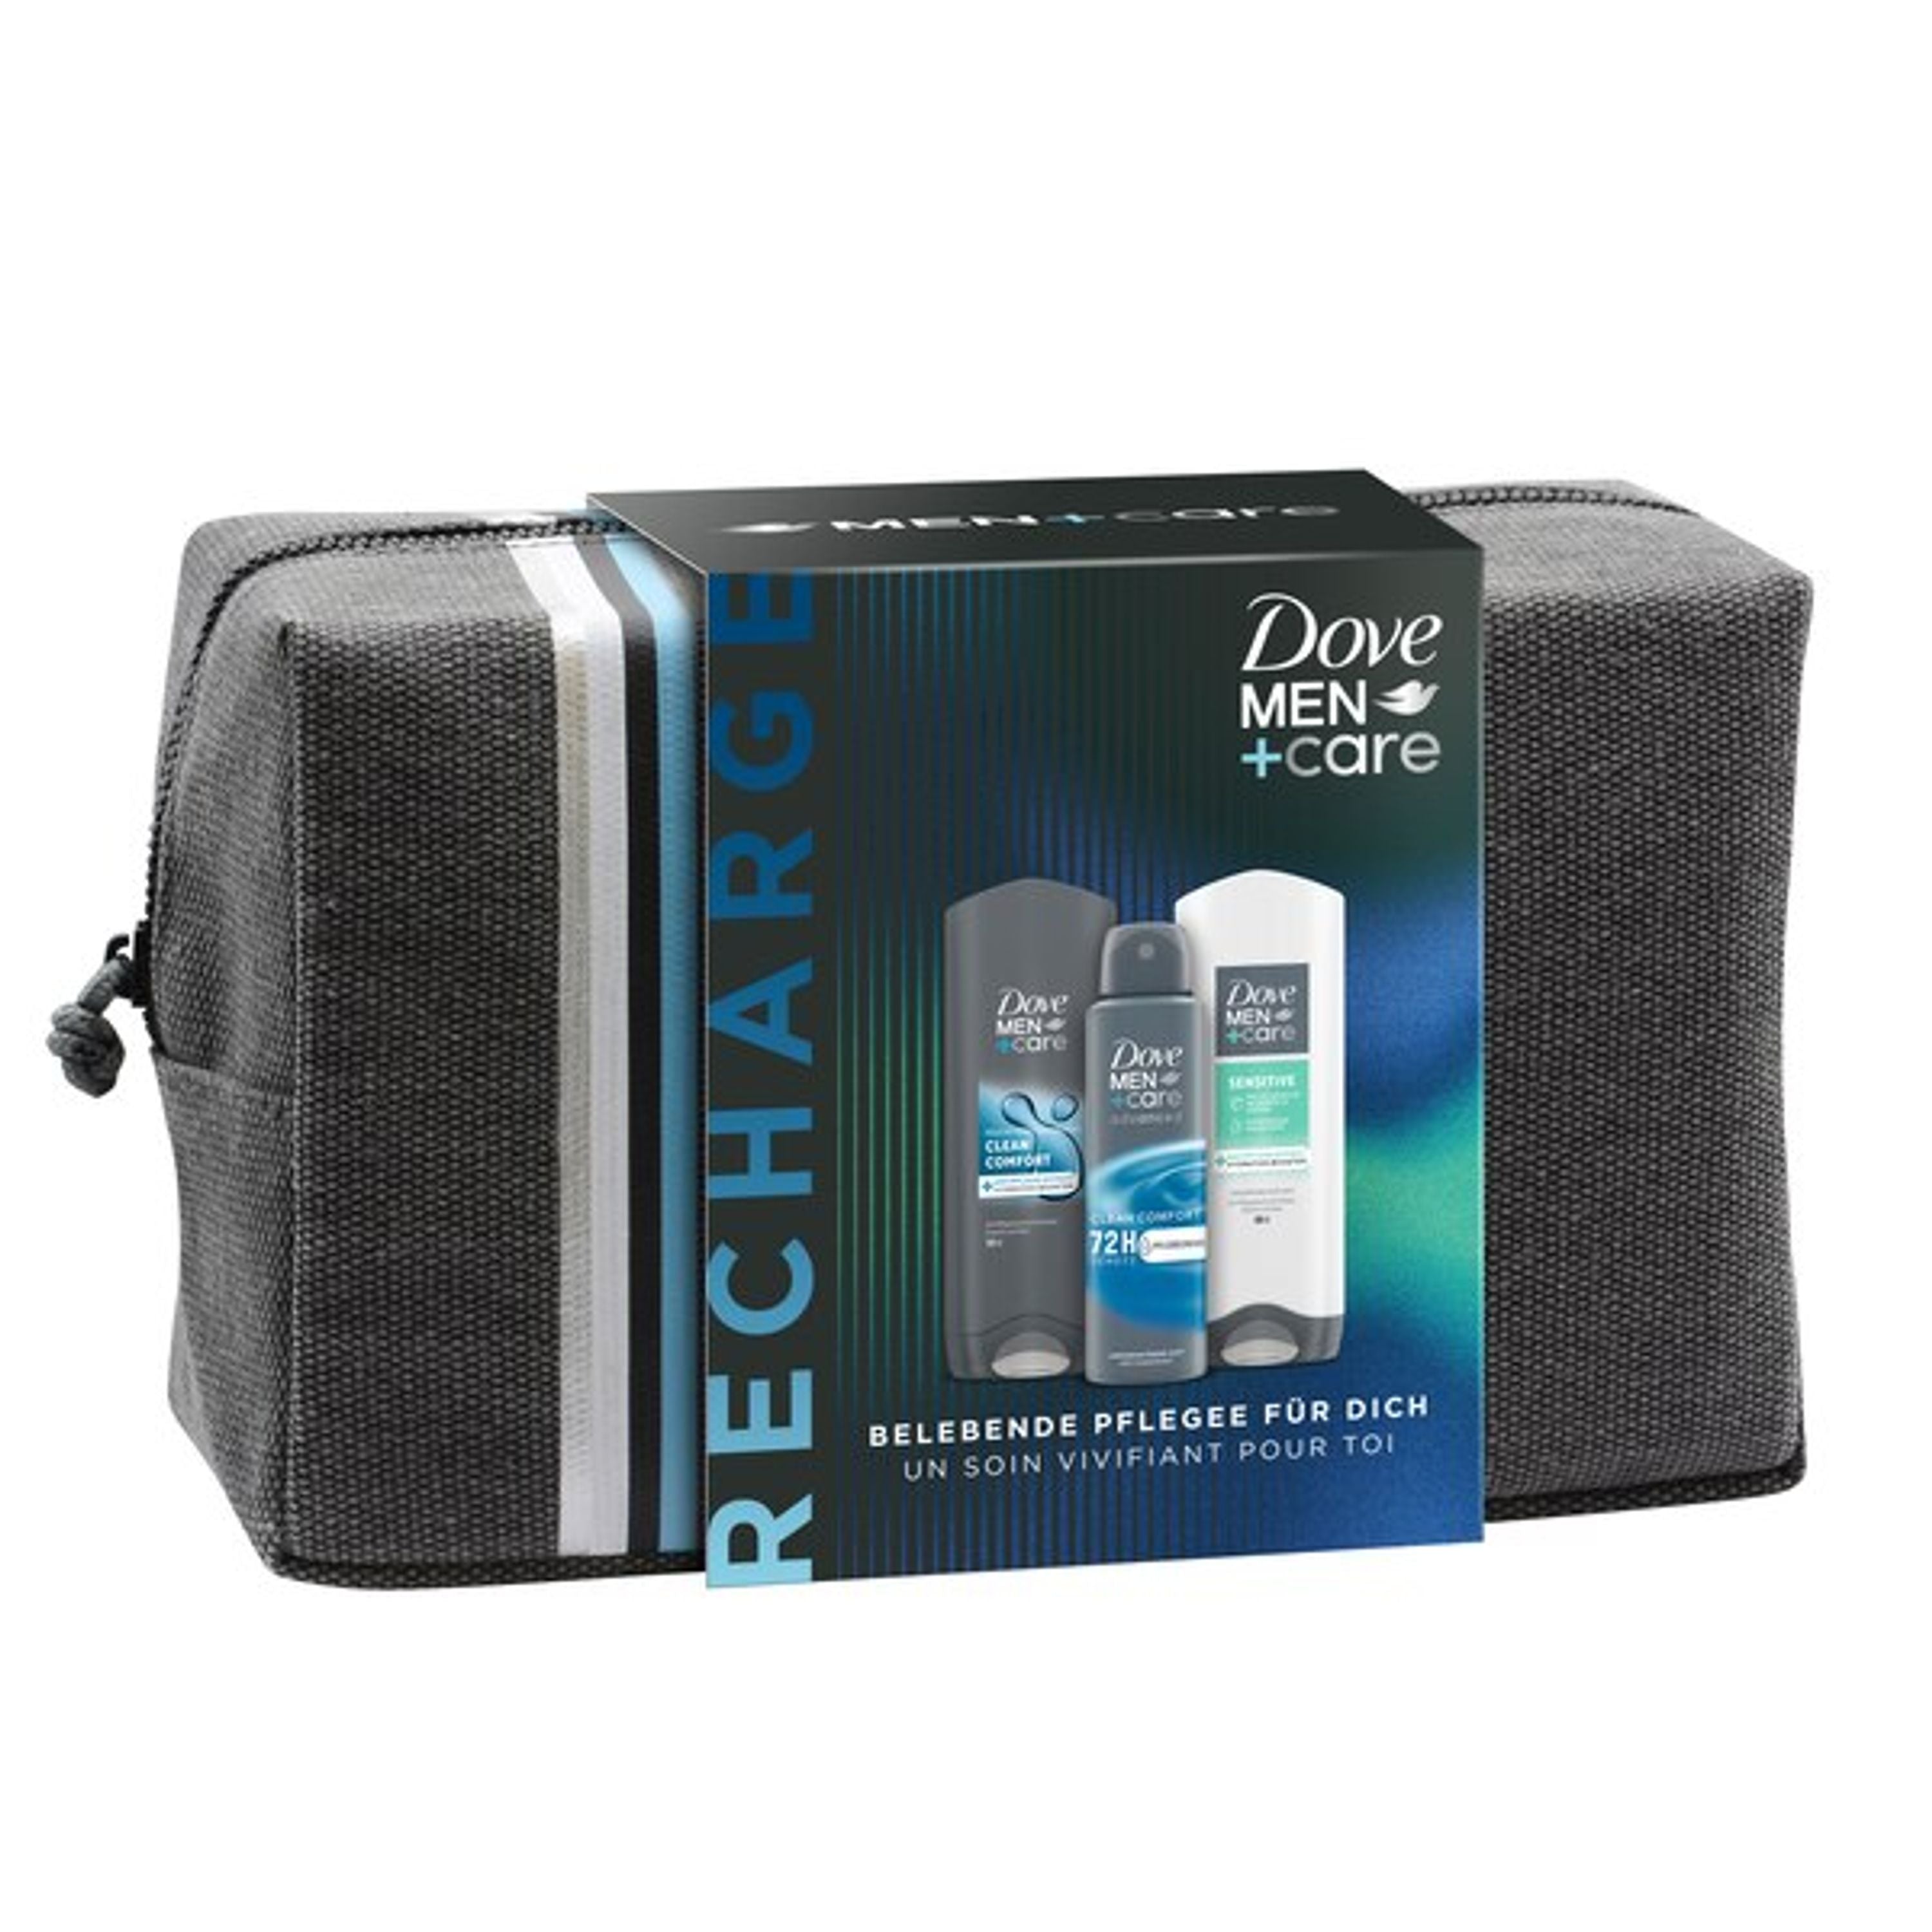 Dove Men+Care Geschenkset "Recharge" mit Clean Comfort + Sensitive Pflegedusche, Anti-Transpirant Deospray und einer Kulturtasche (2 x 250 ml + 150 ml)